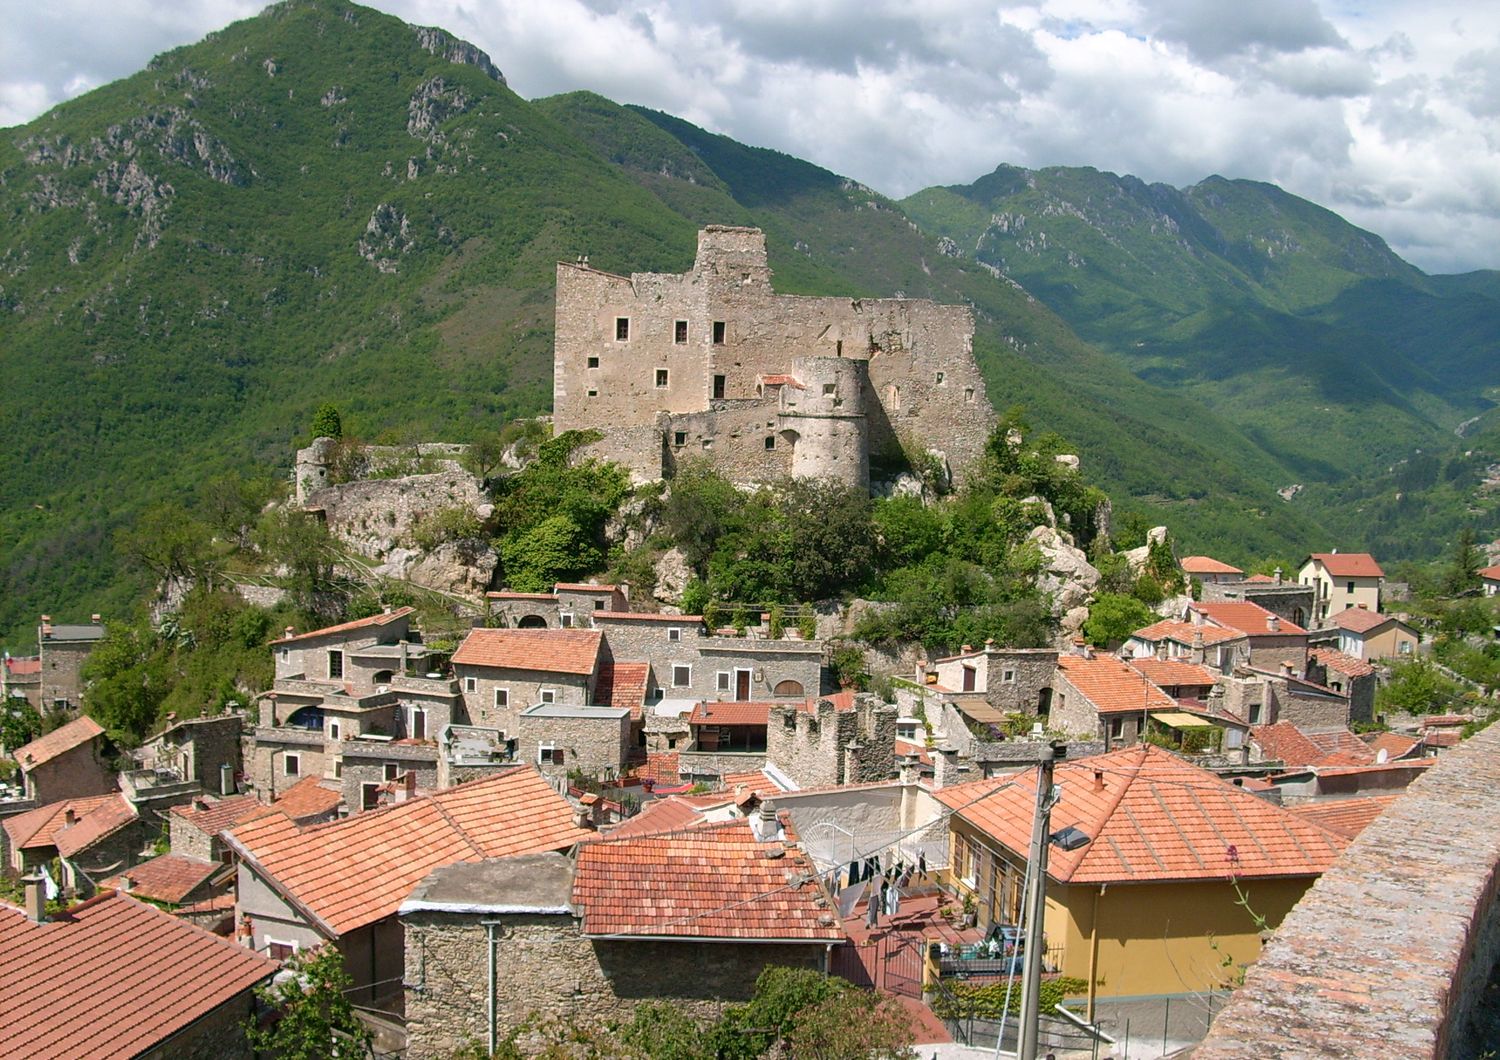 Castelvecchio di Rocca Barbena (Savona)